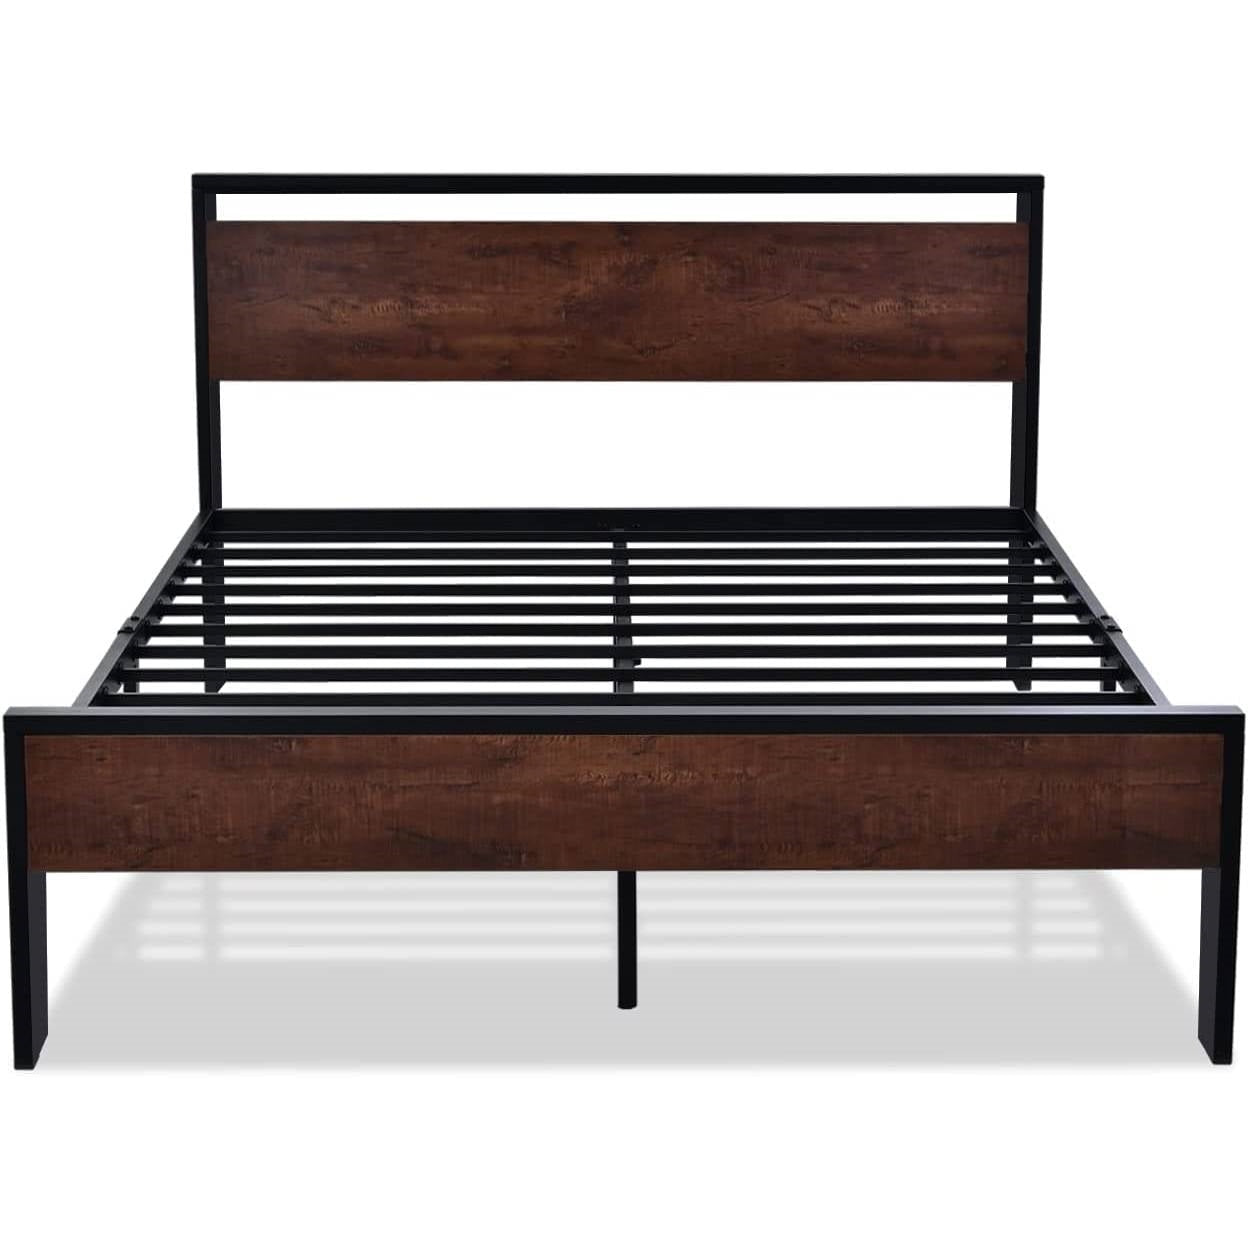 Bedroom > Bed Frames > Platform Beds - King Metal Platform Bed Frame With Mahogany Wood Panel Headboard Footboard